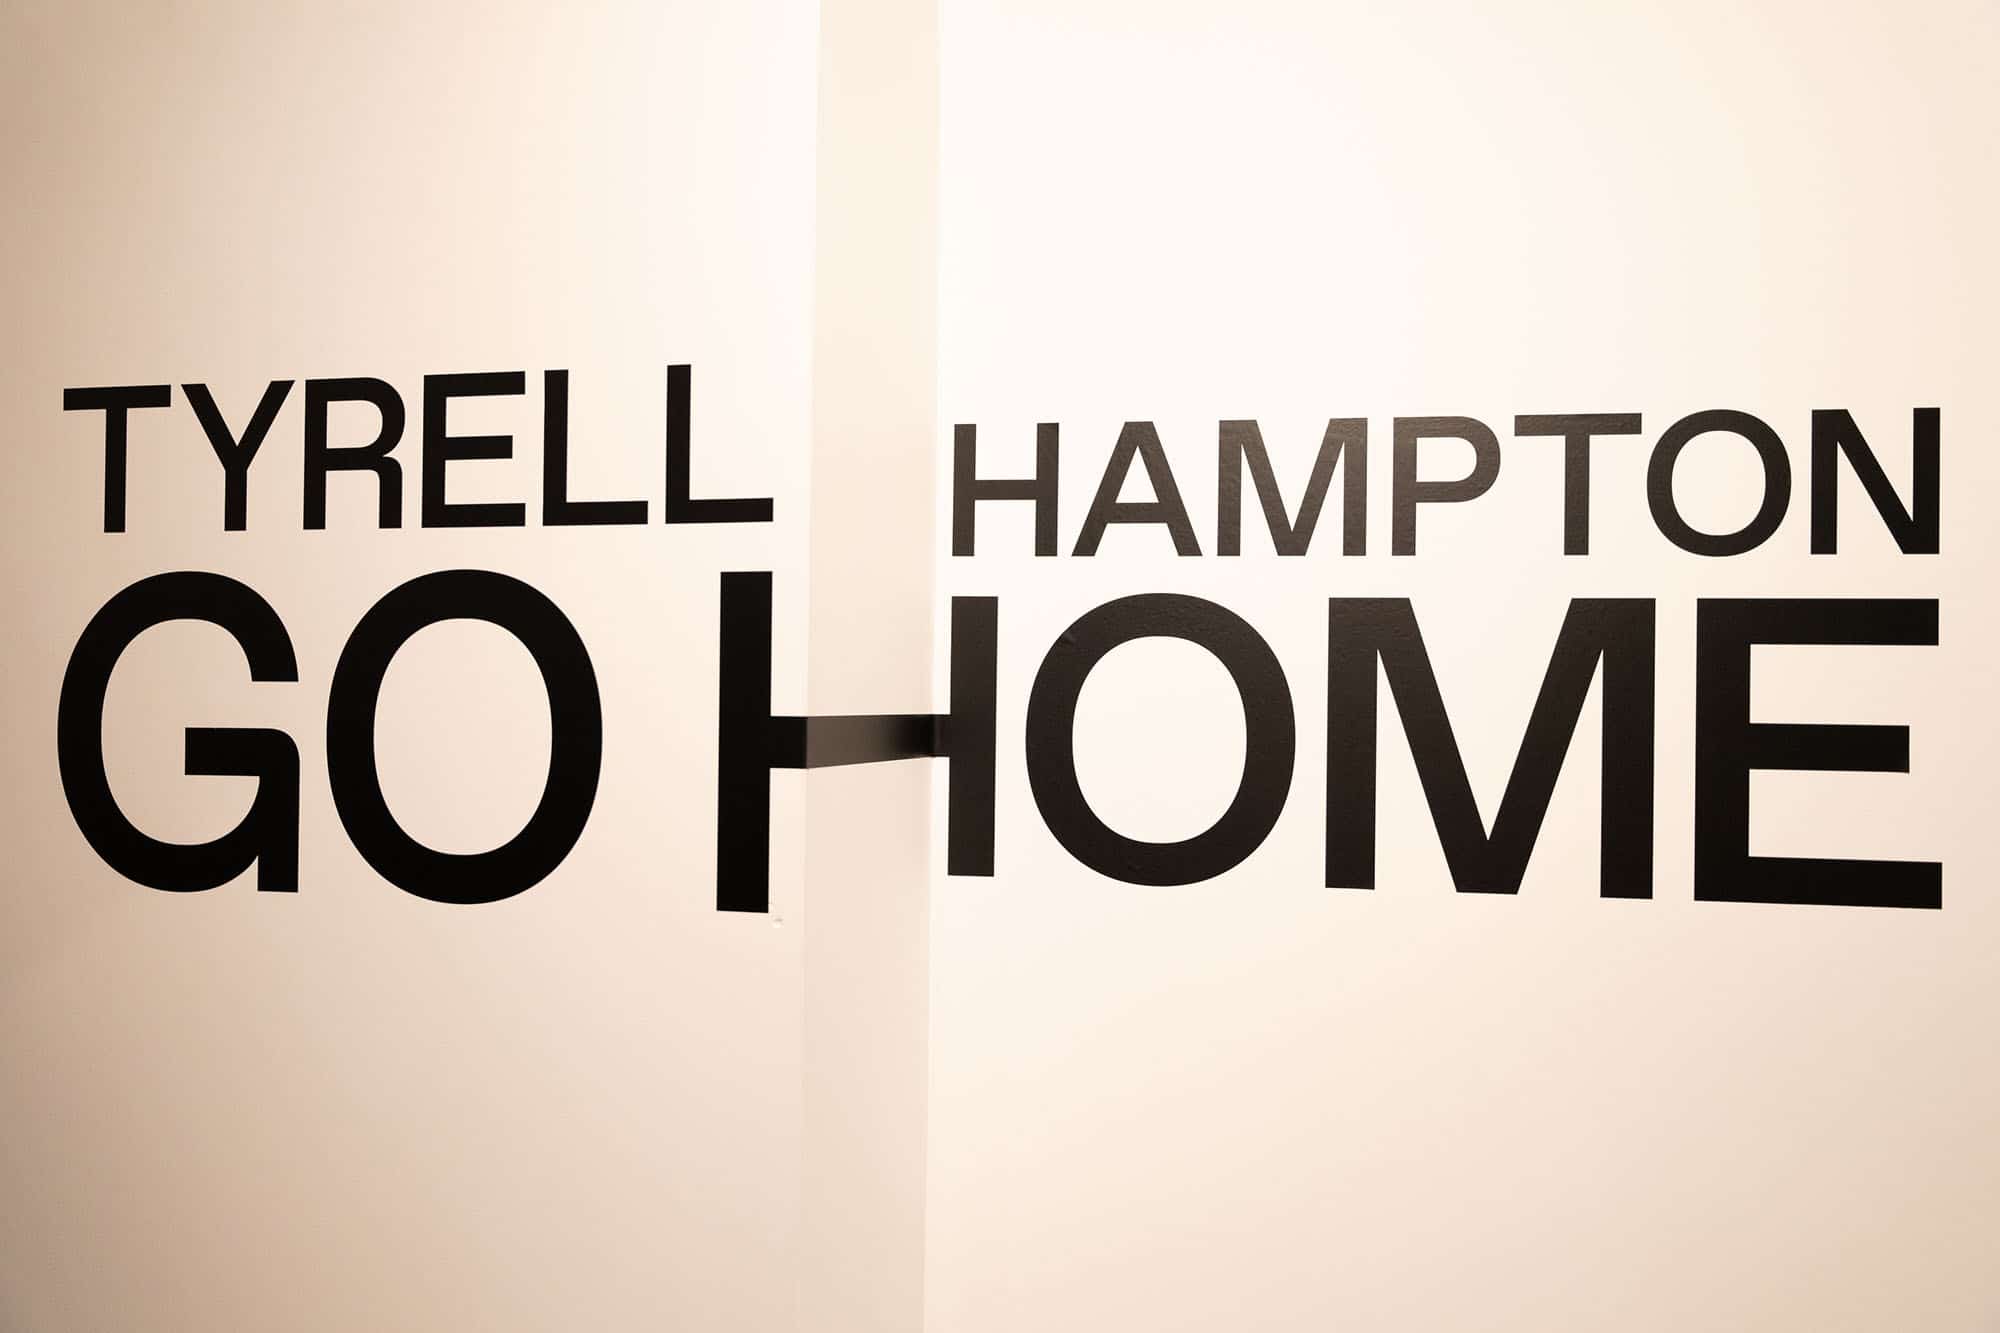 Tyrell Hampton - Go Home printed on a wall